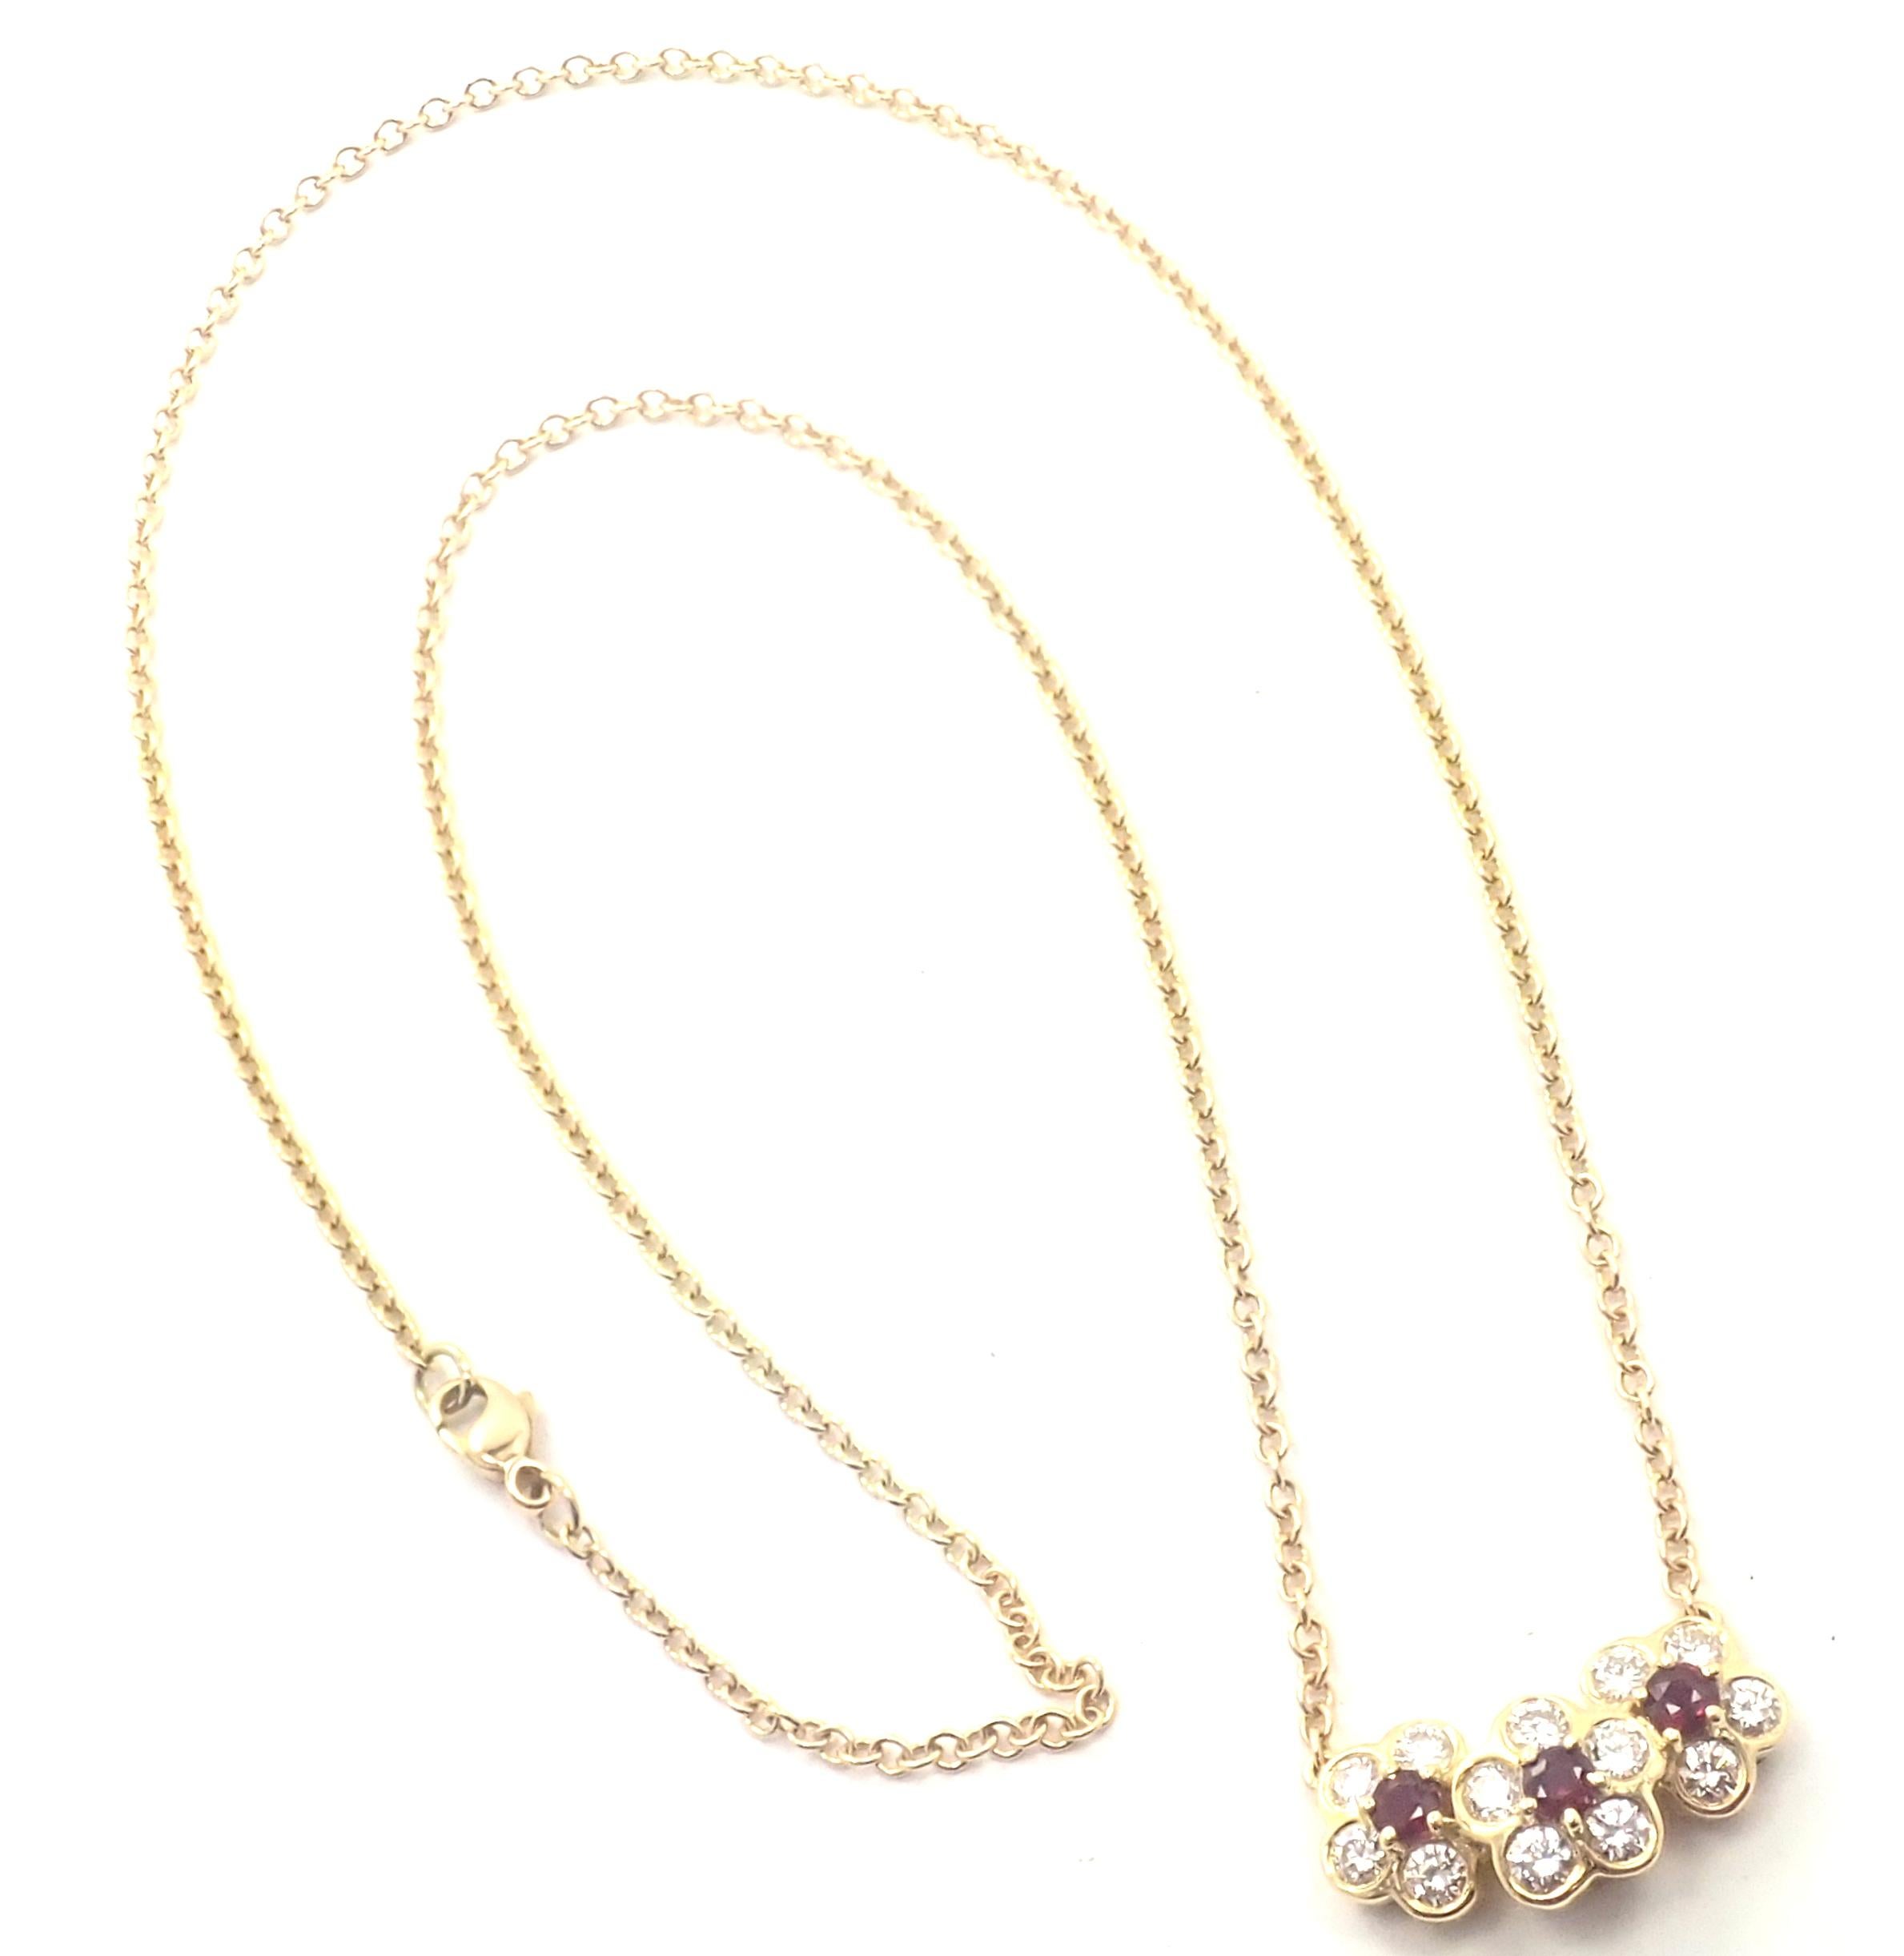 collier pendentif fleur Fleurette en or jaune 18k avec diamant et rubis 
par Van Cleef & Arpels.  
Avec 113 diamants, pureté VS1, couleur G. Poids total des diamants : environ 1,00ctw. 
3 pierres de rubis  0.53ct
Détails :  
Longueur : 17''